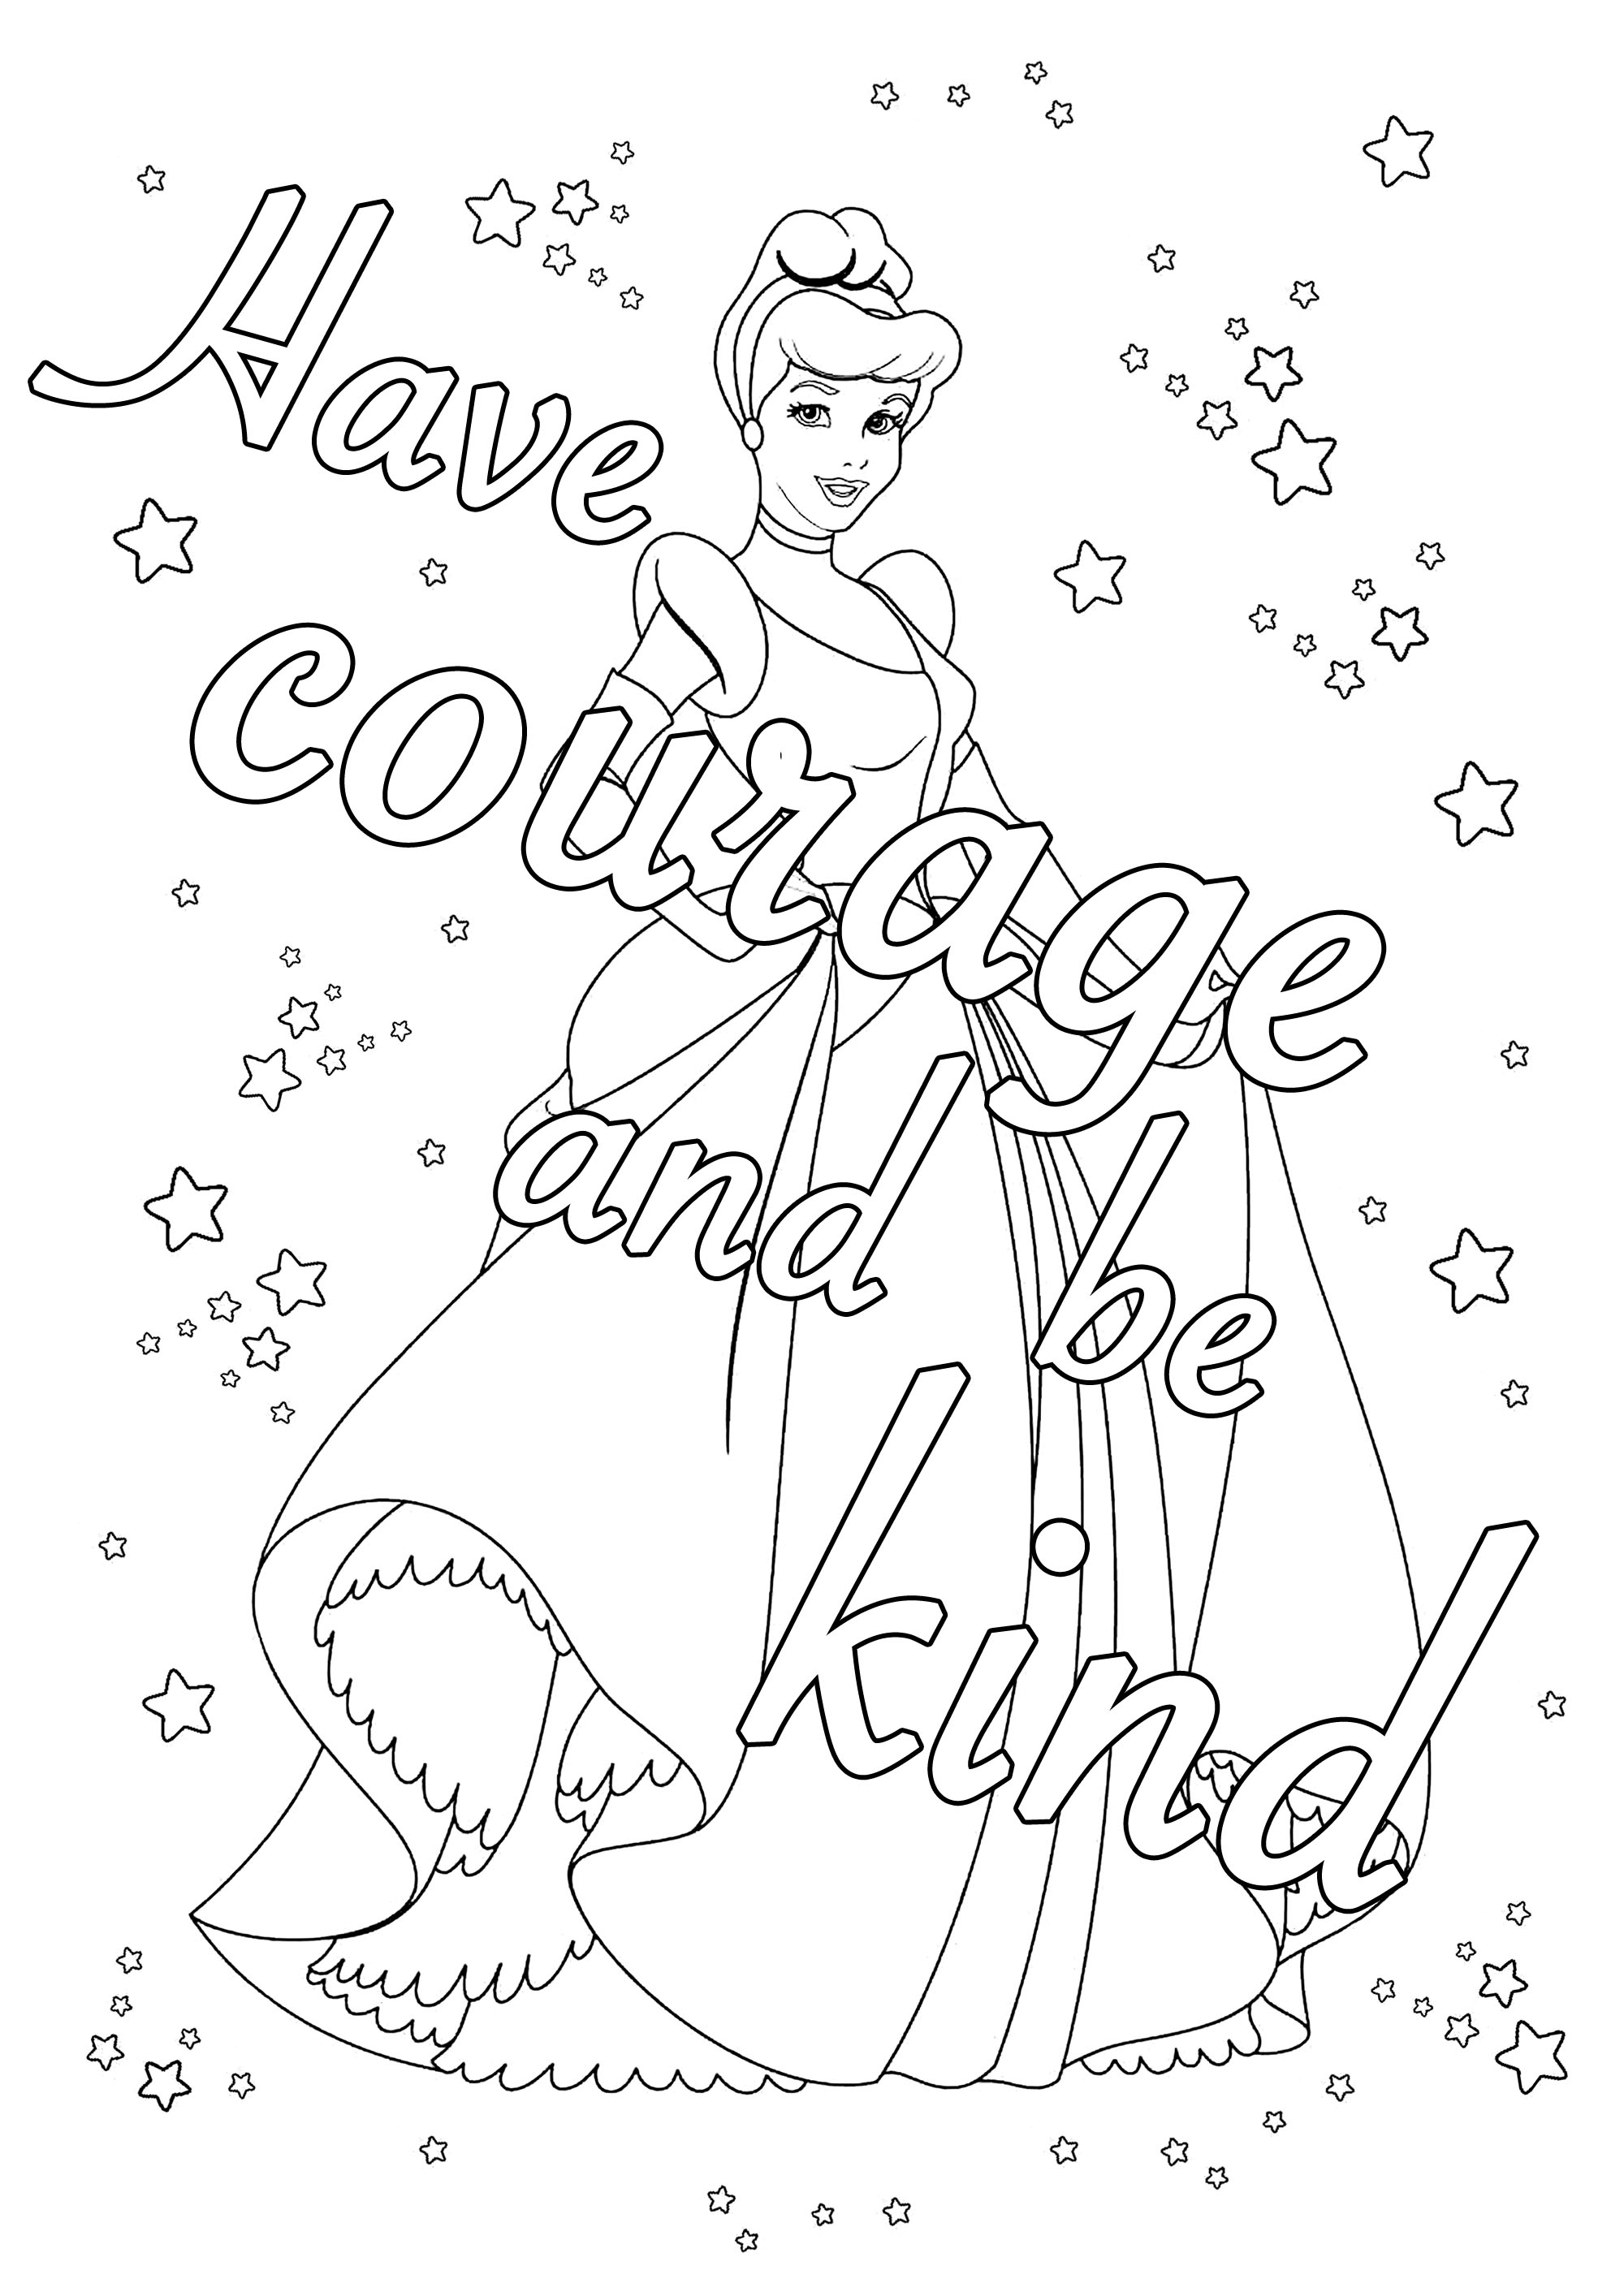 Página para colorir com a frase 'Tem coragem e sê gentil', da mãe de Ella em Cinderela